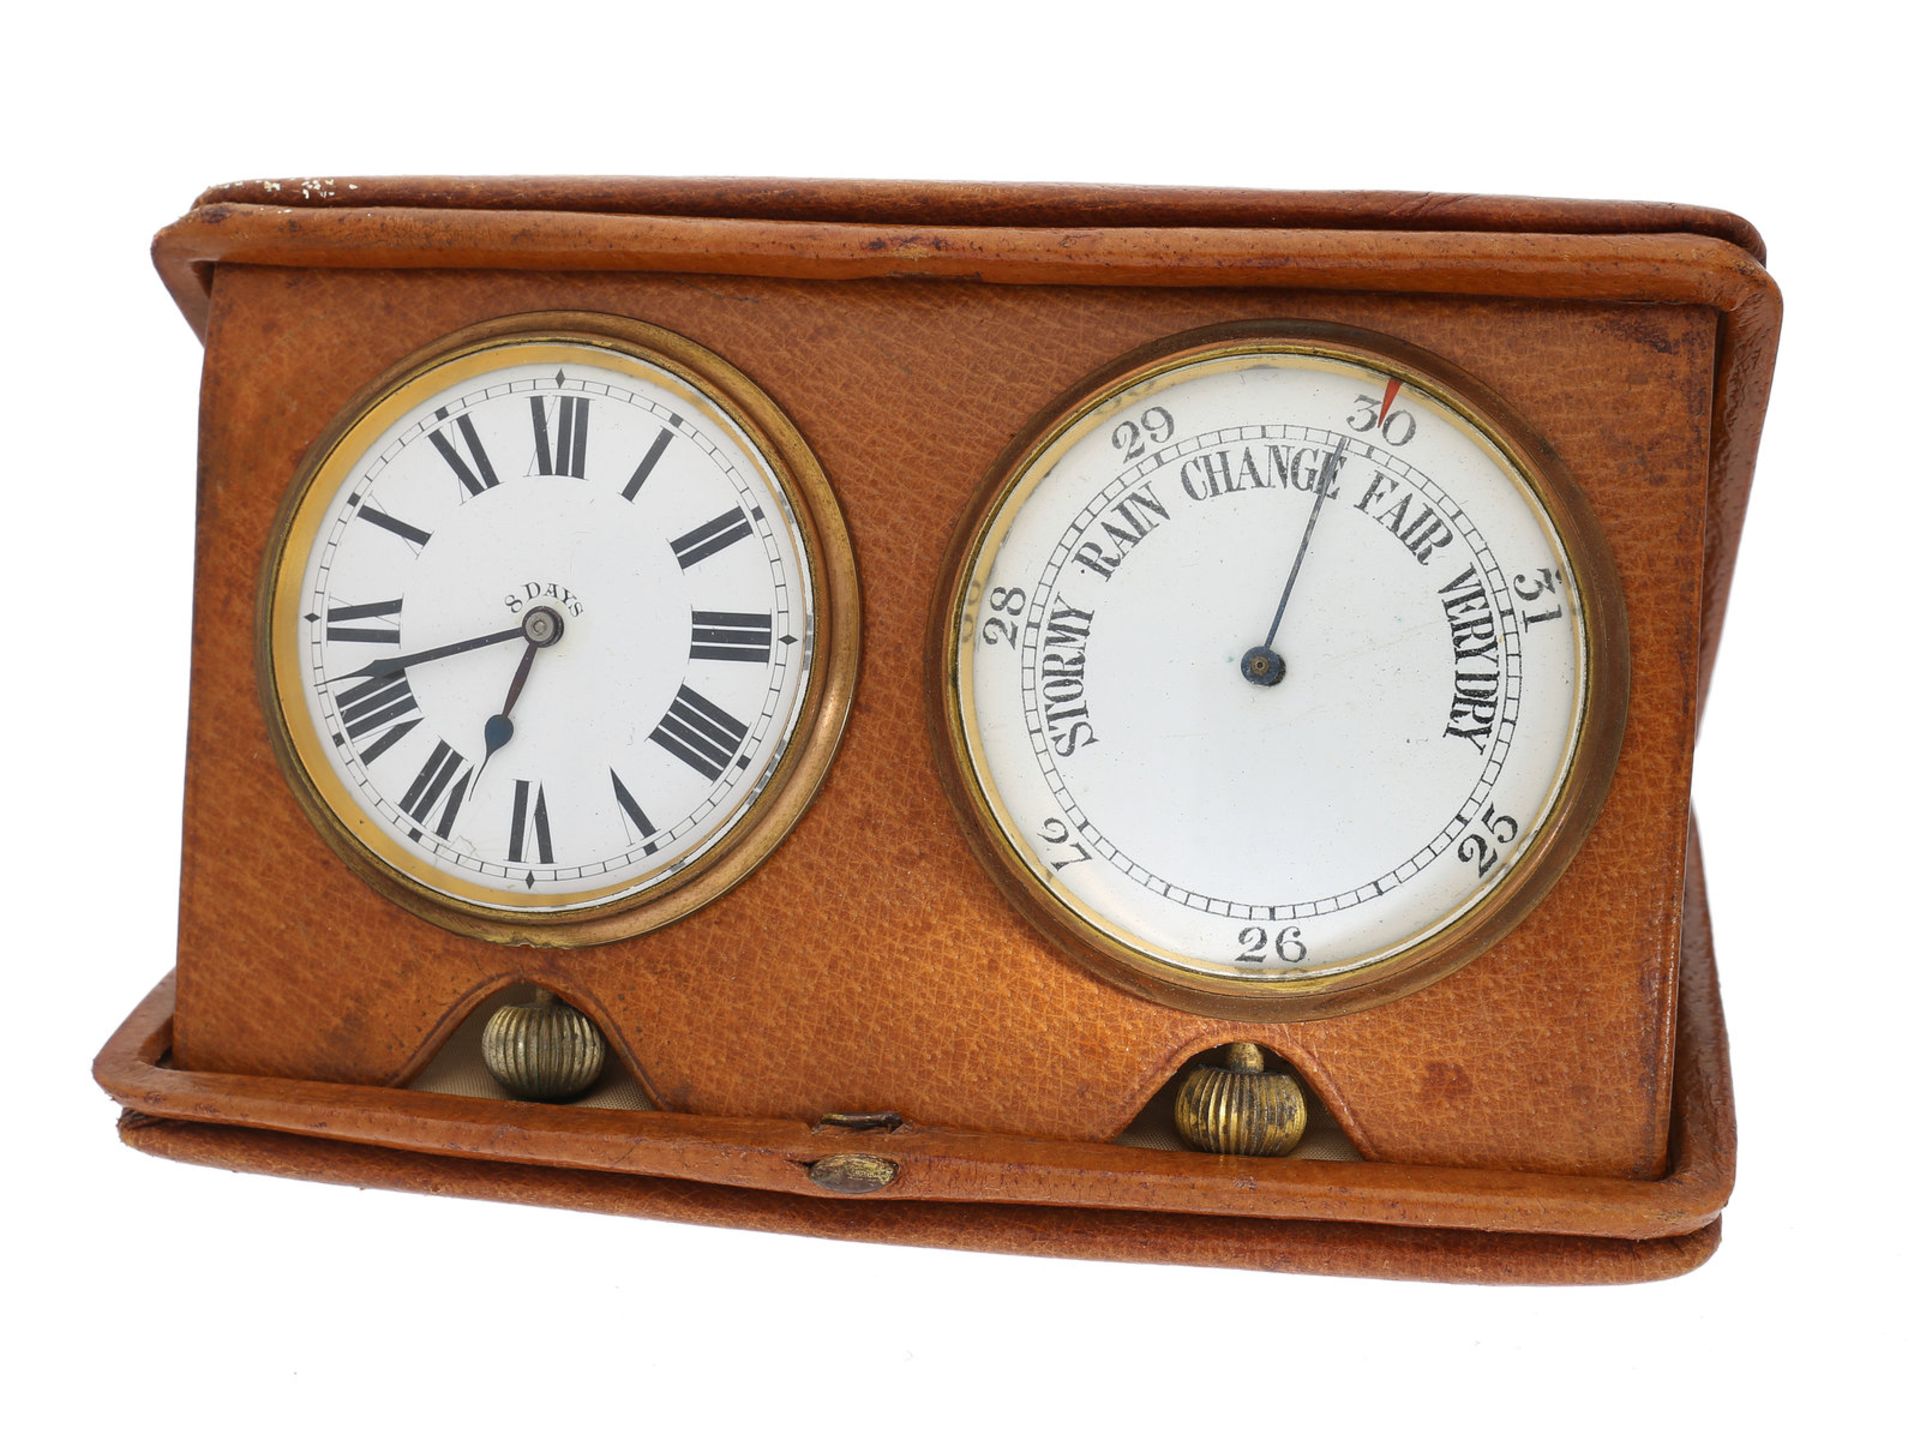 Taschenuhr/Reiseuhr: attraktives englisches Reiseetui mit Uhr und Barometer, sog. Wetterstation,